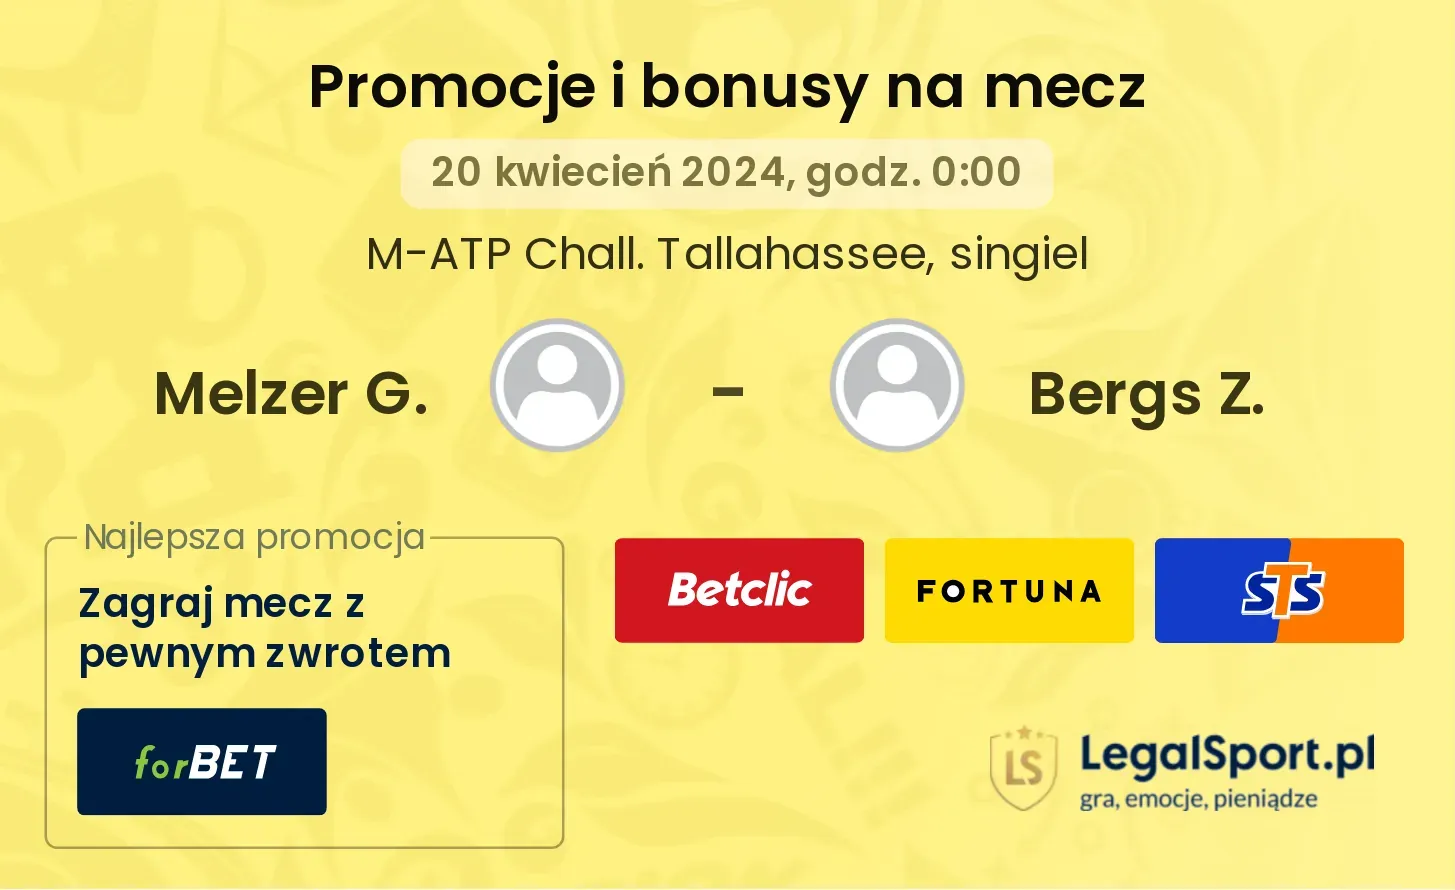 Melzer G. - Bergs Z. promocje bonusy na mecz